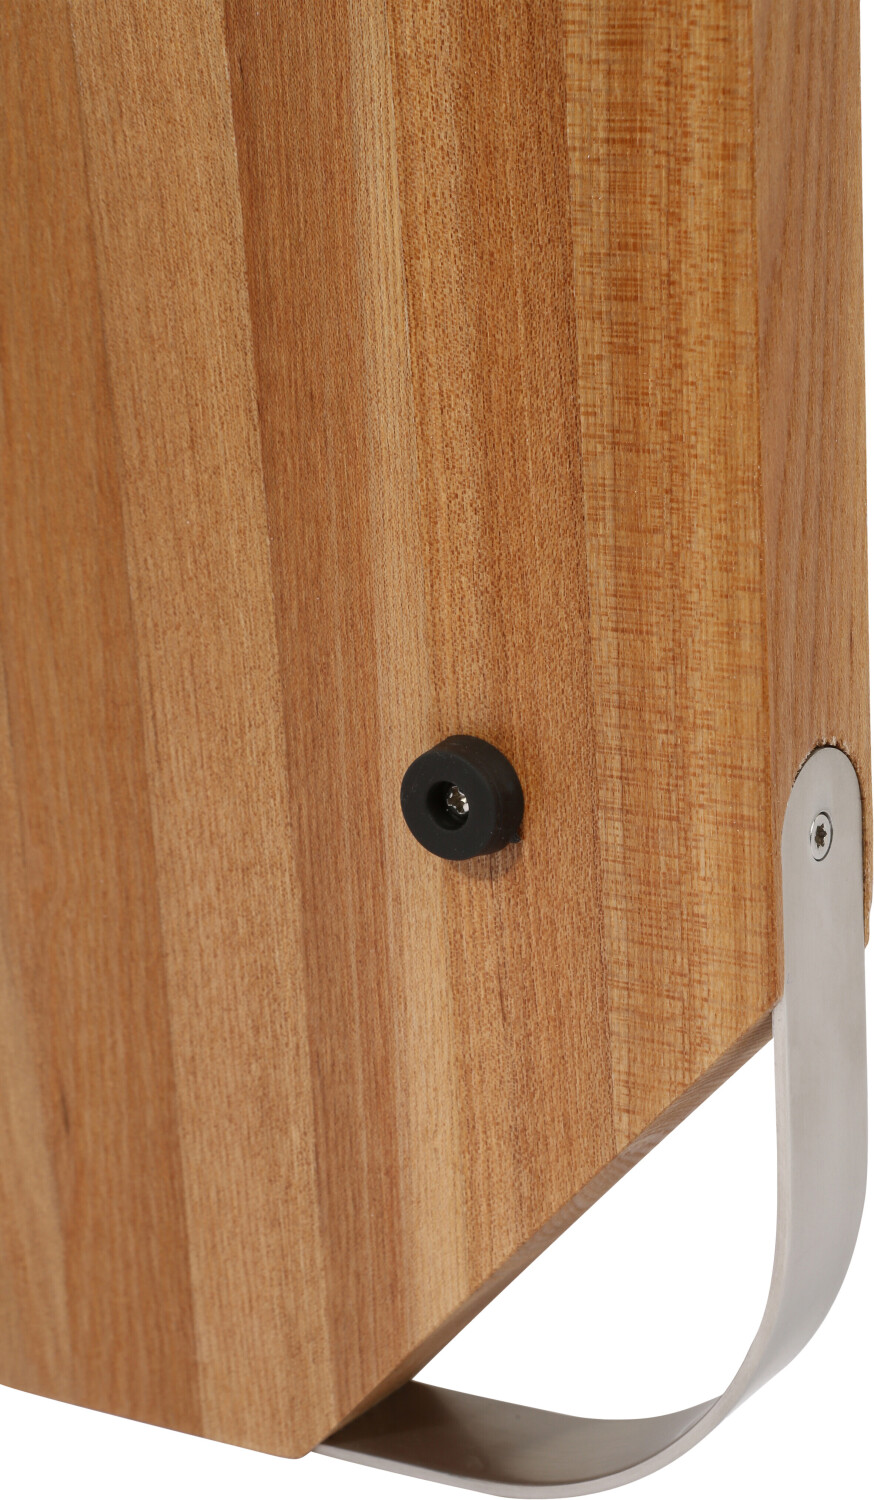 Rösle Elm wood cutting board with handle ab 64,50 € | Preisvergleich bei